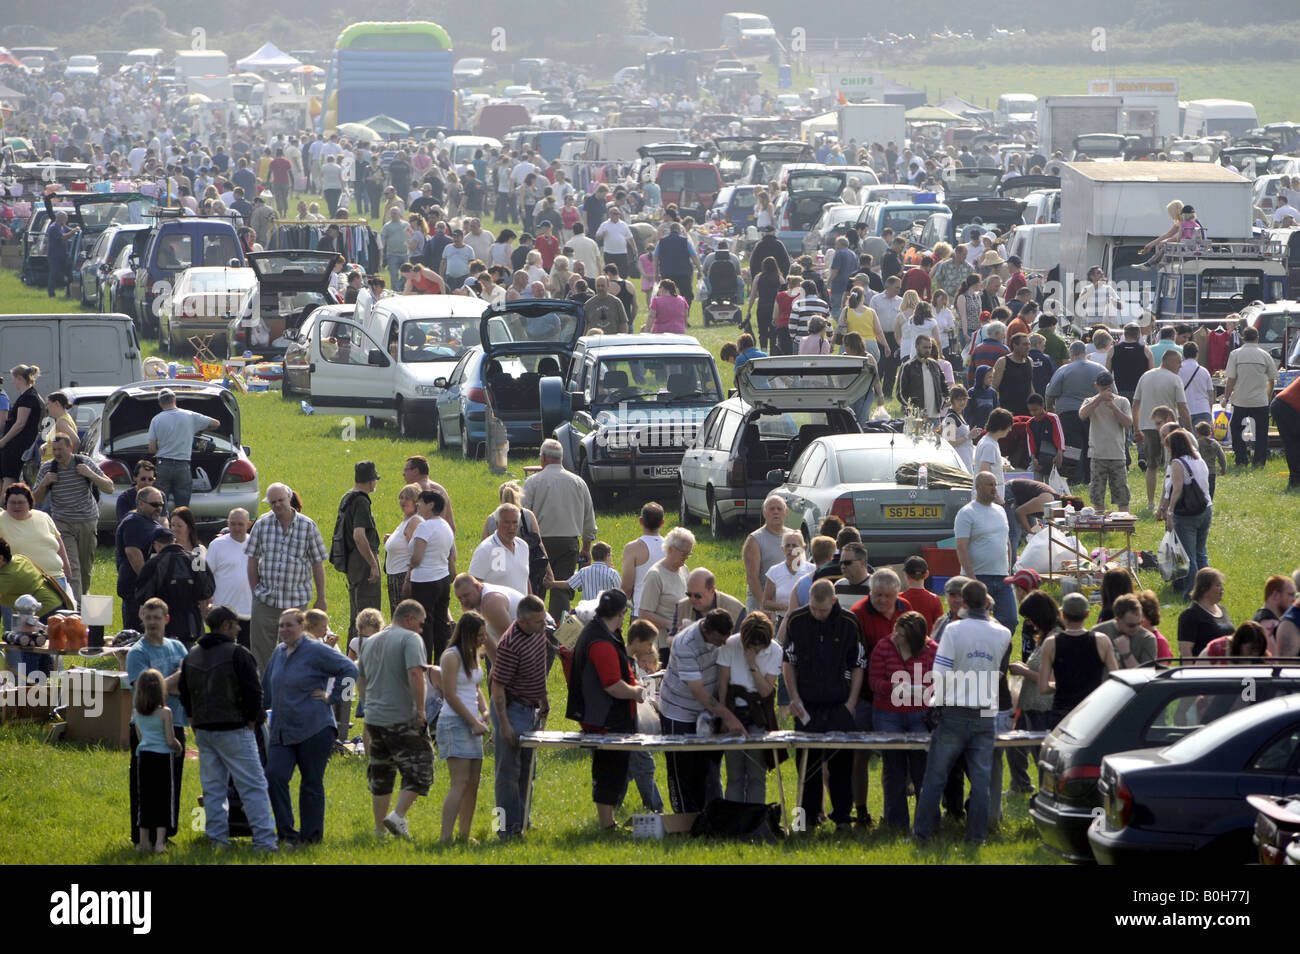 La foule à un vide grenier dans le Staffordshire, Angleterre, Royaume-Uni. Banque D'Images